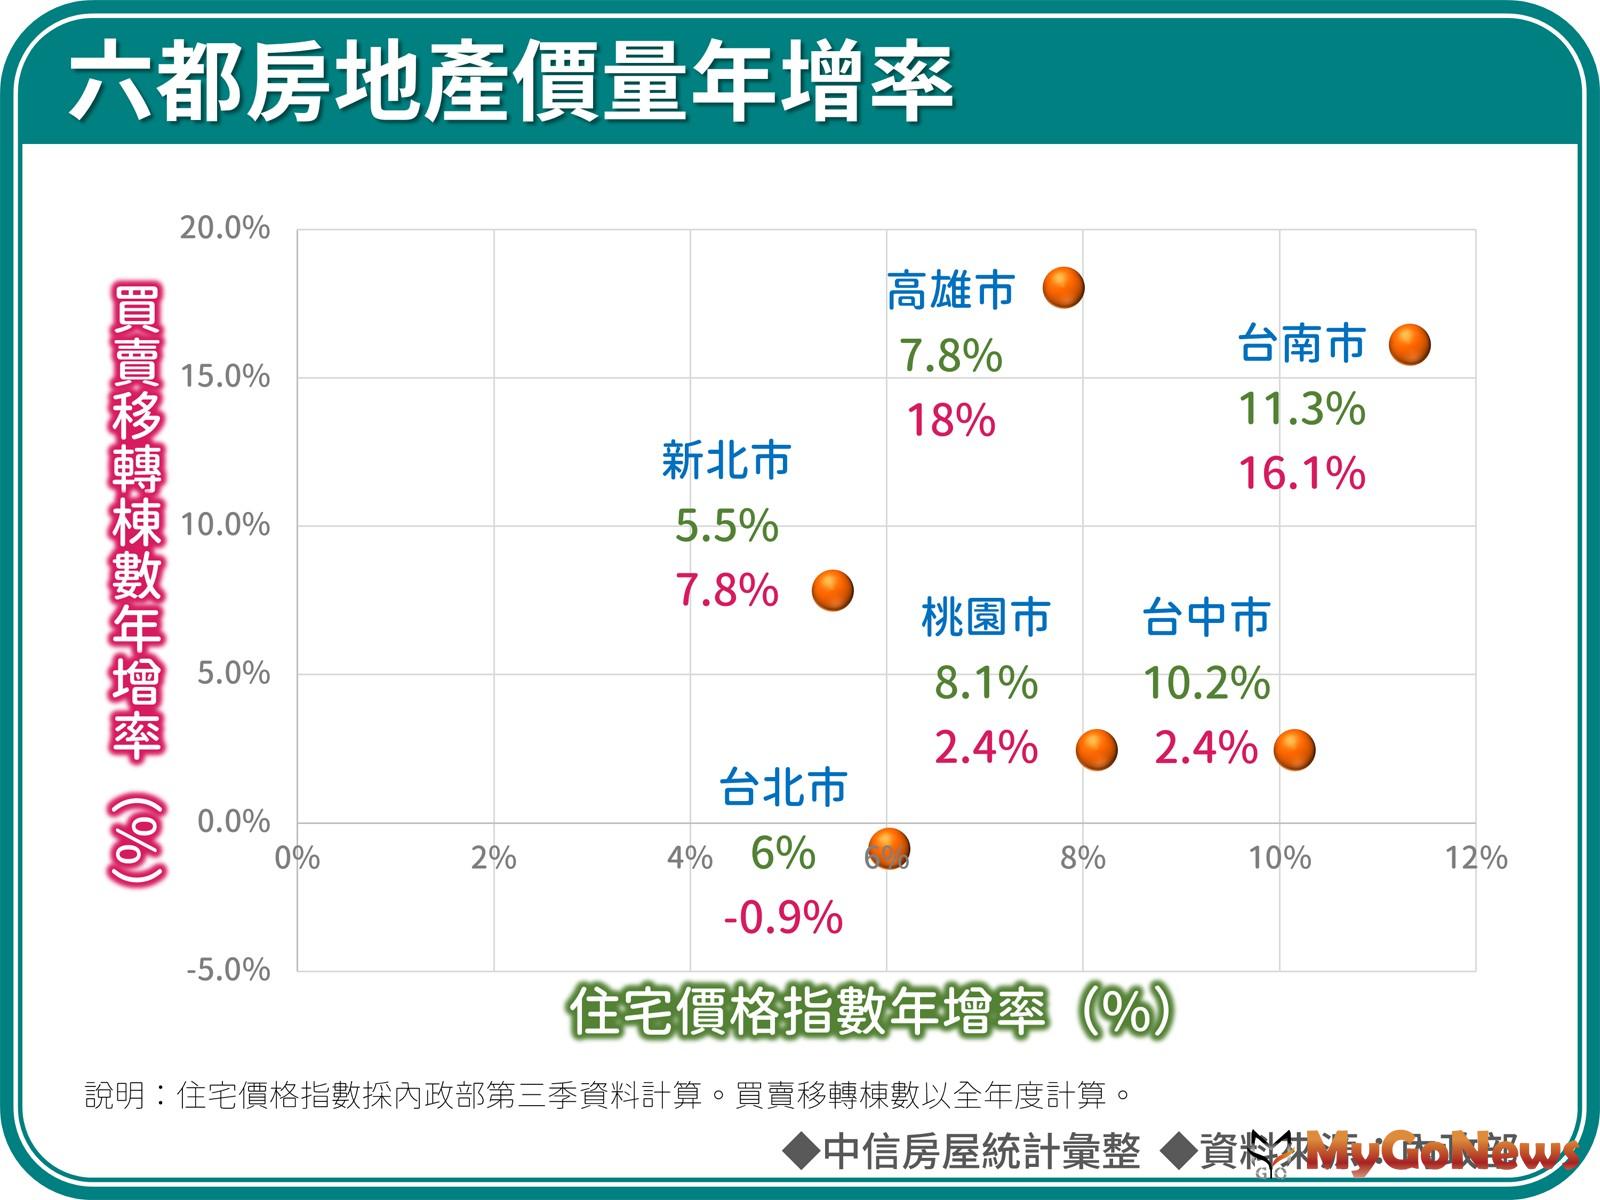 綜觀六都表現，台南市分別拿下價量第一與第二，表現最為出色。台北市則恰好完全相反，分別拿下倒數第二及倒數第一，表現相對疲弱。 MyGoNews房地產新聞 市場快訊